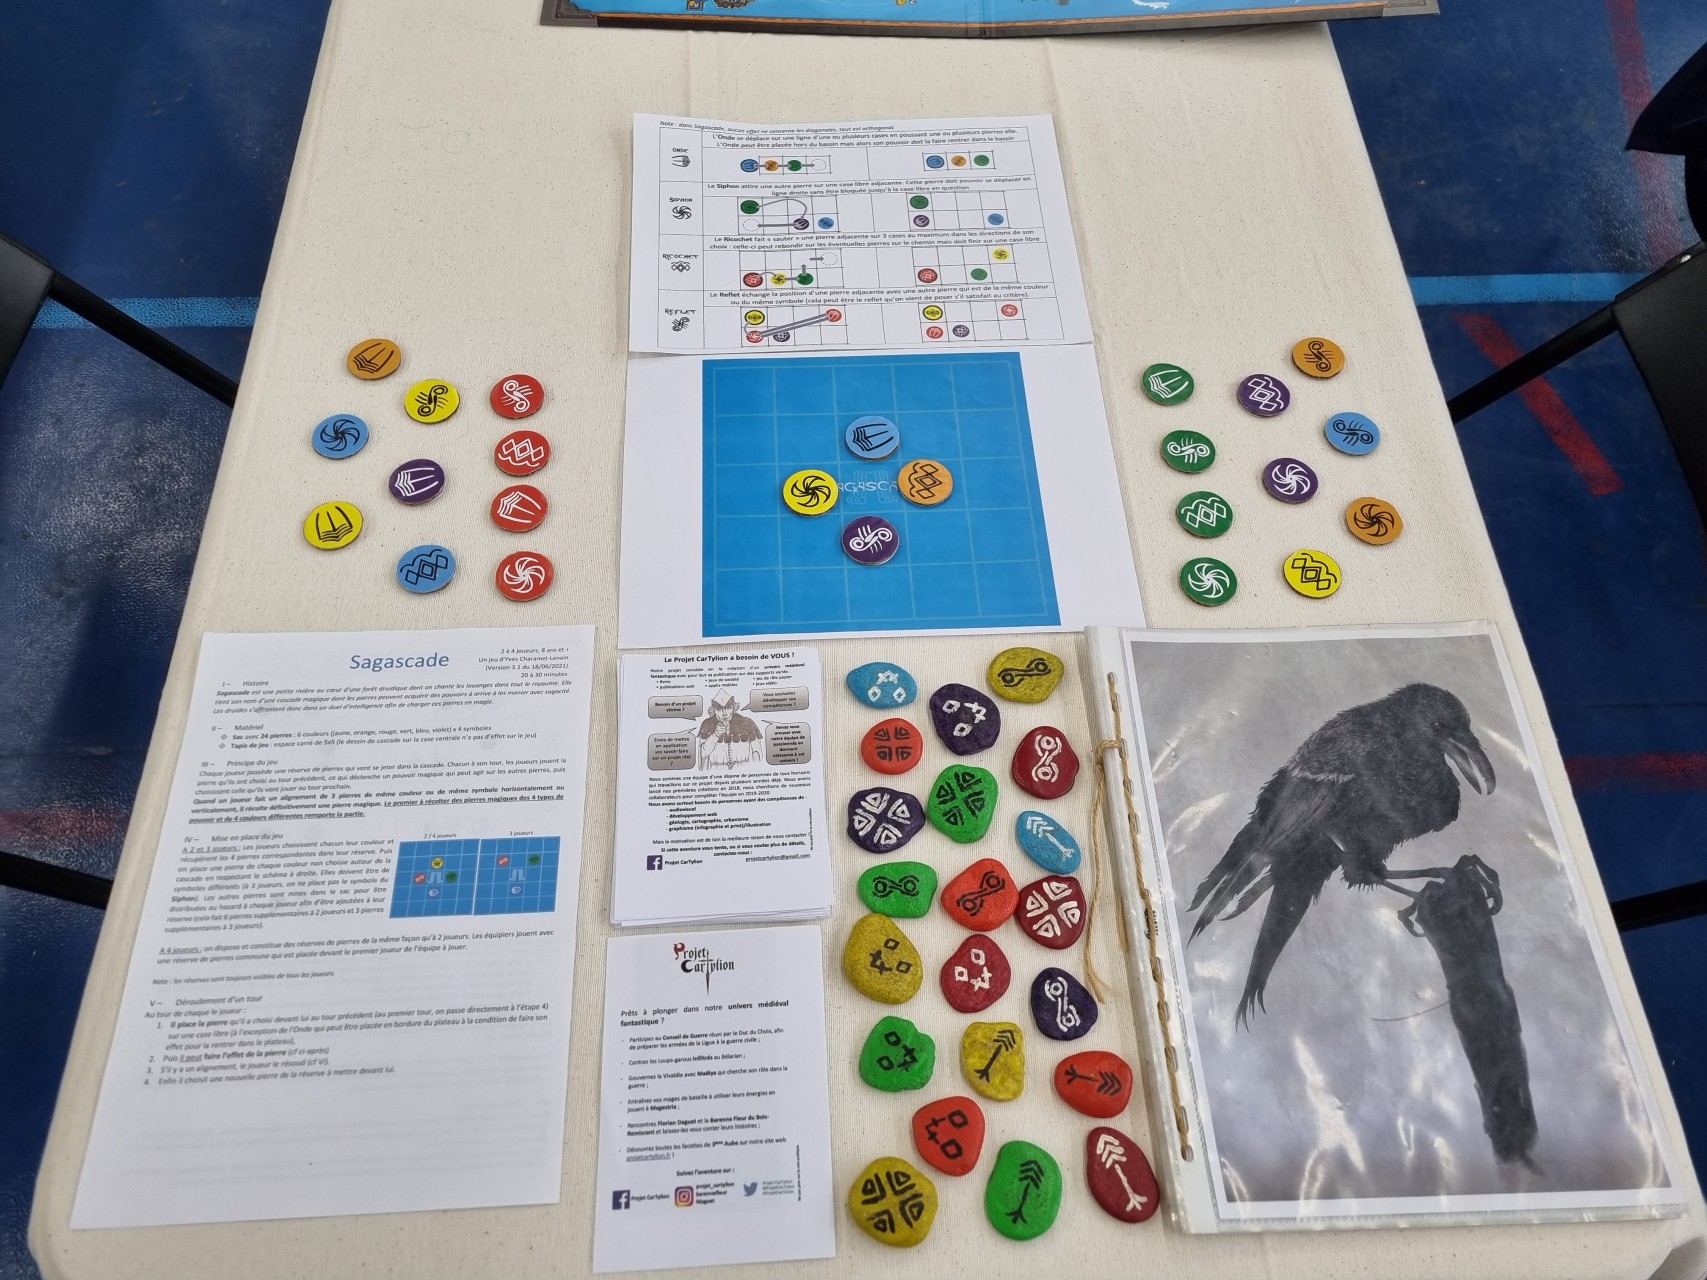 Table de jeu avec le jeu Sagascade présenté et des flyers du Projet CarTylion